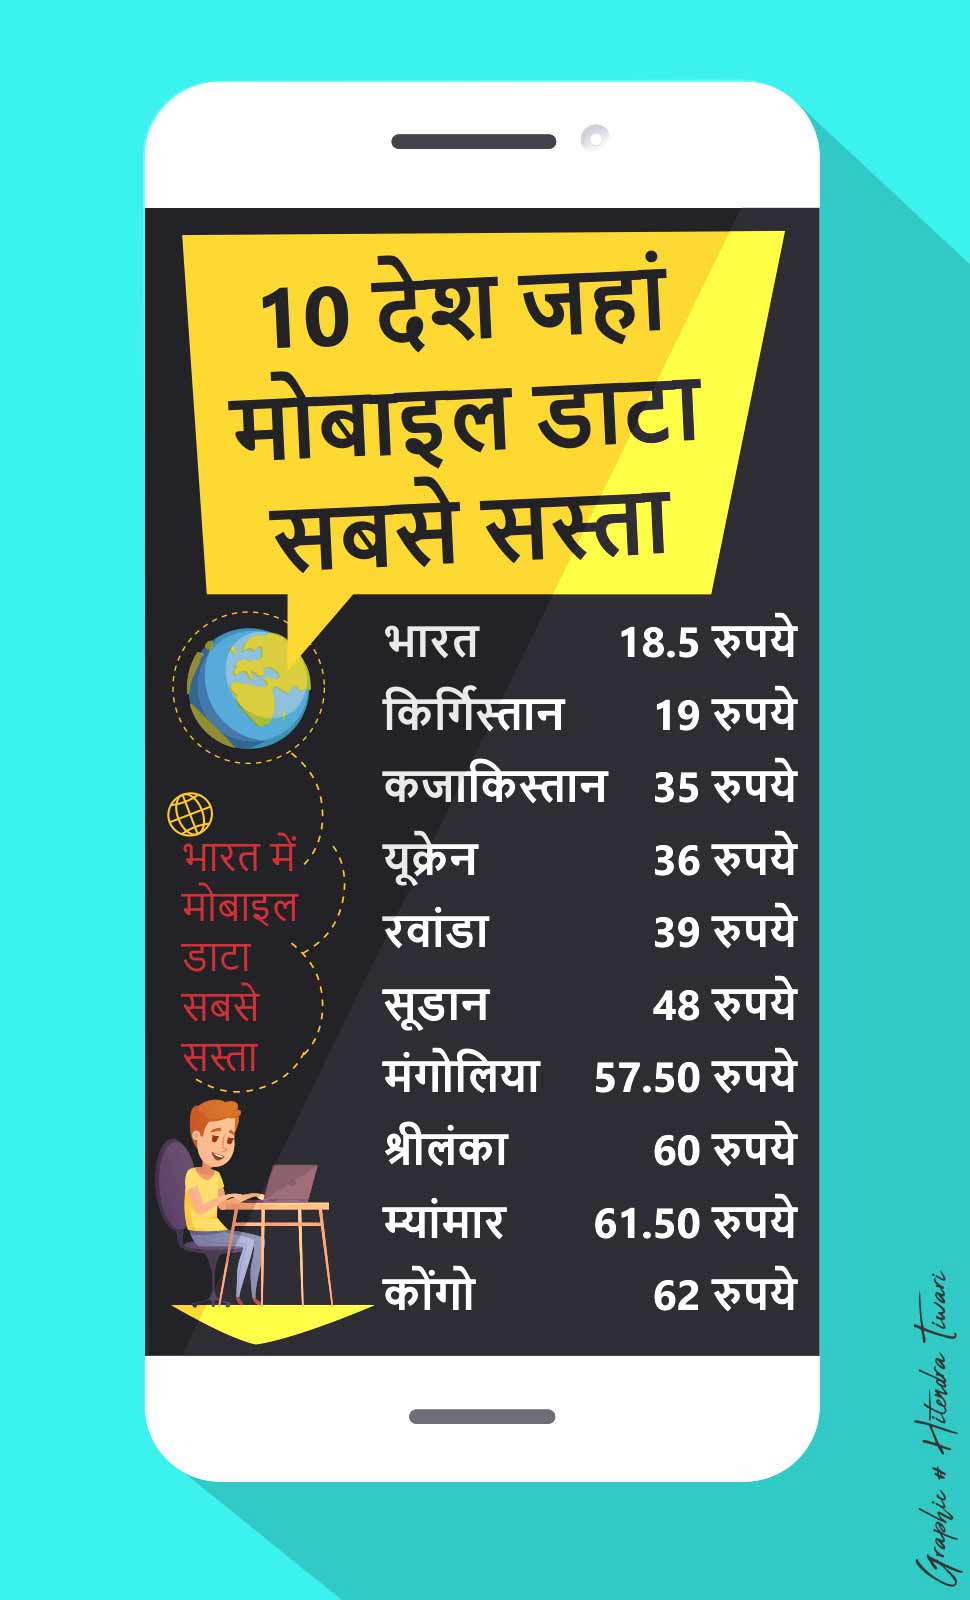 सबसे सस्ता इंटरनेट, cheapest data rate, data rate in india, internet rate in america, internet rate in china